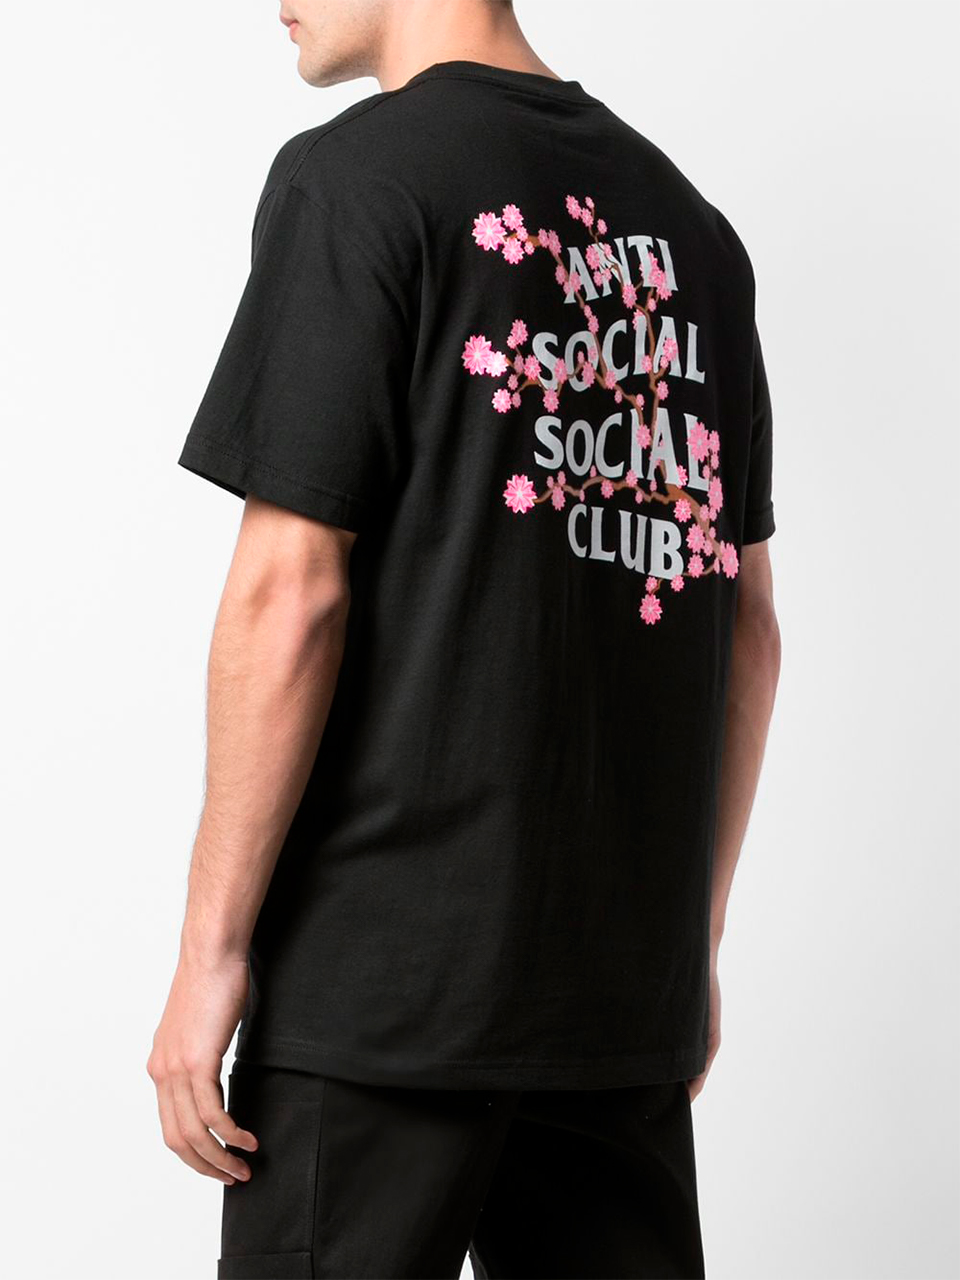 Imagem de: Camiseta Anti Social Social Club Preta Cherry Blossom